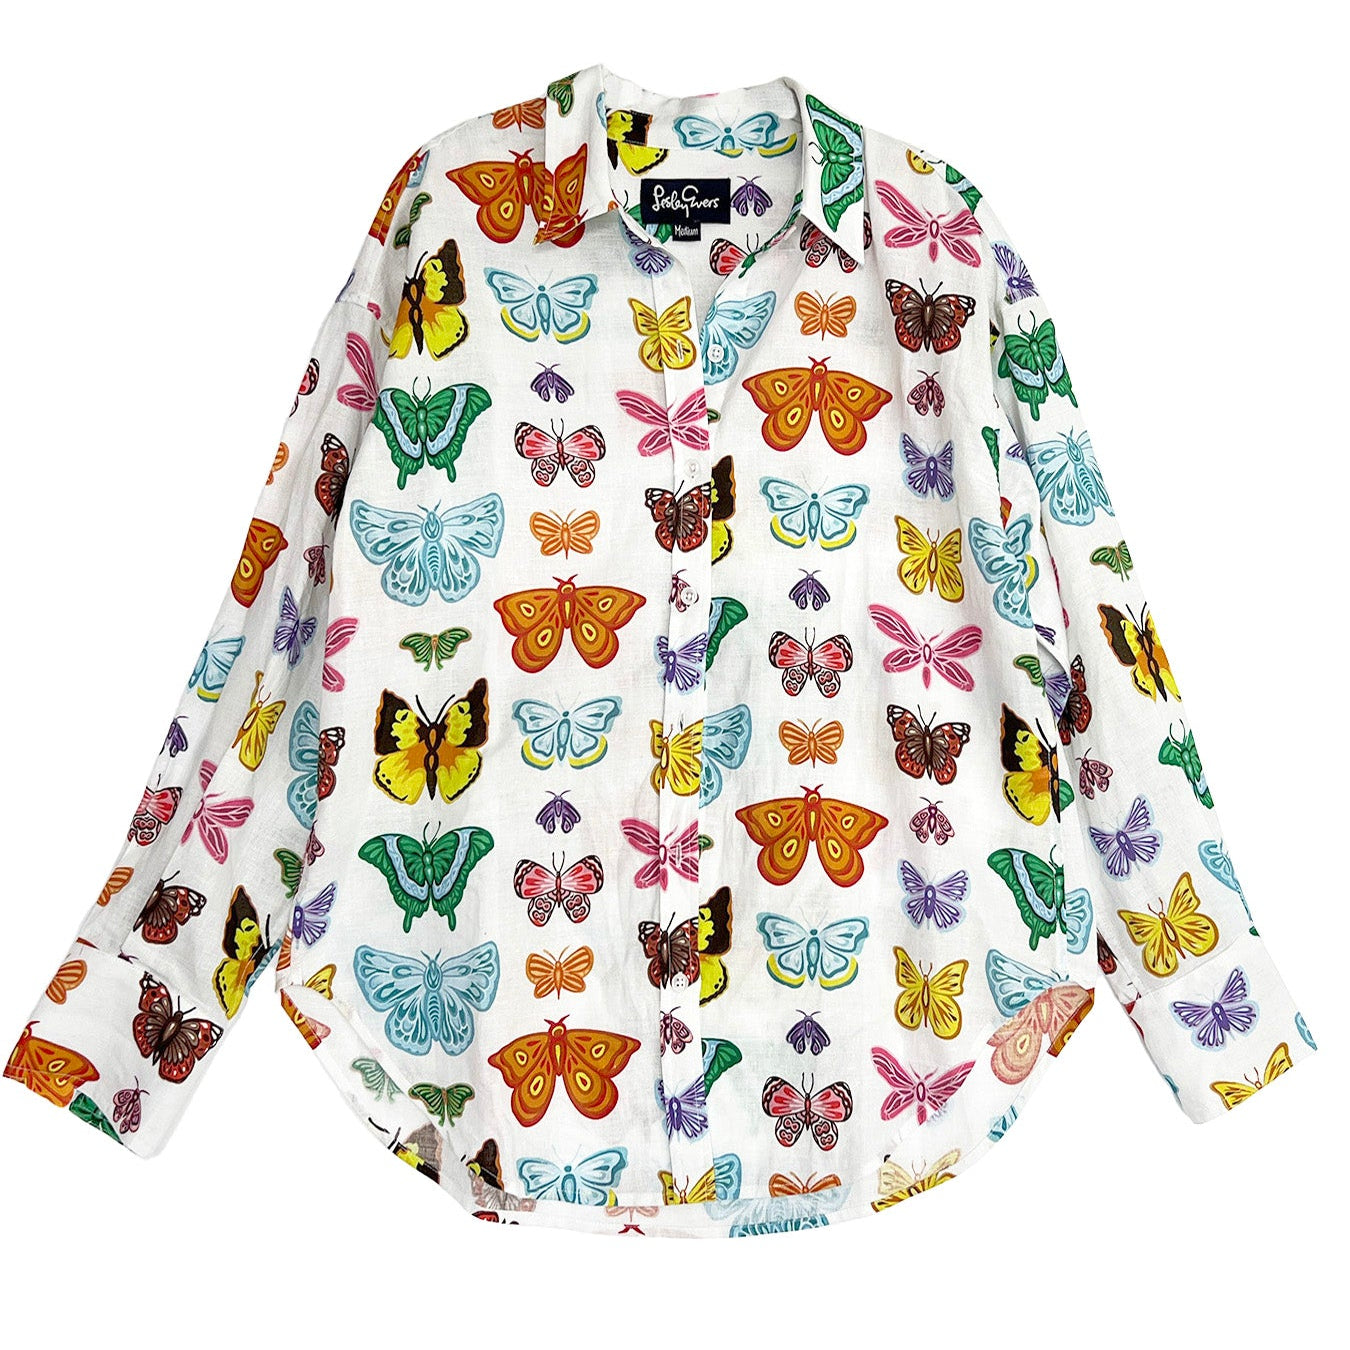 DAWN shirt Butterflies and Moths - Lesley Evers-Best Seller-blouse-DAWN